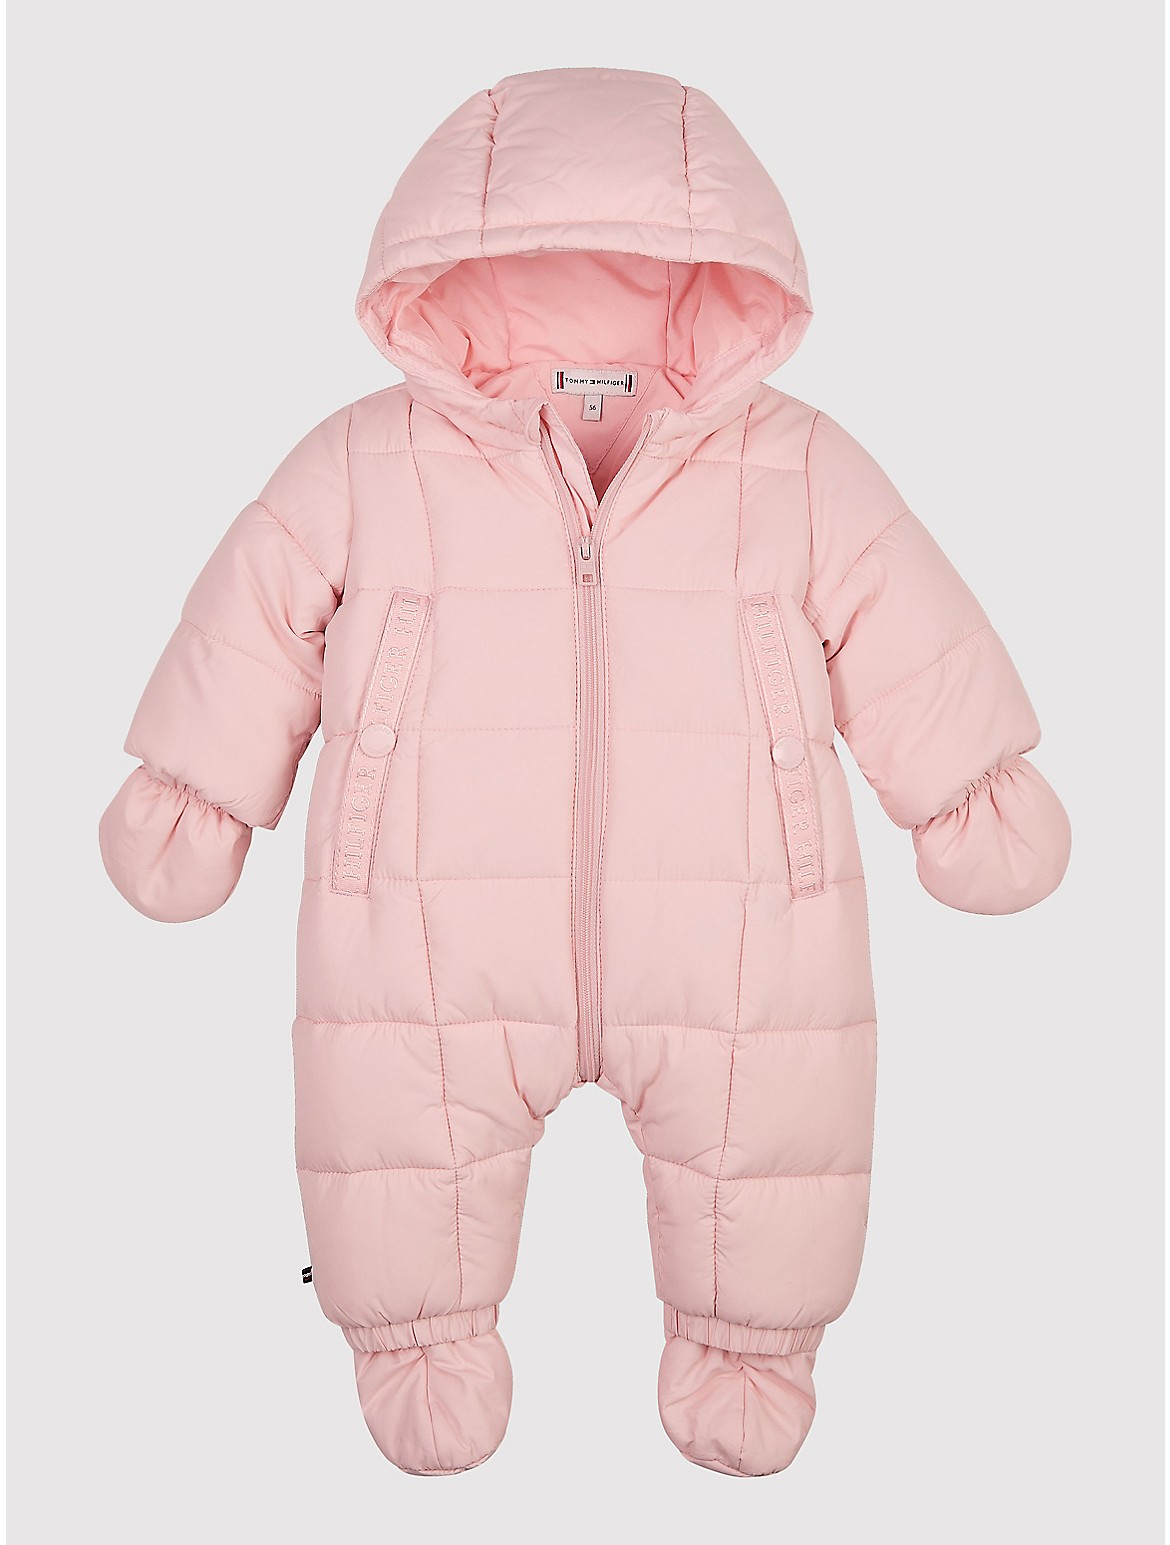 Tommy Hilfiger Babies' Ski Suit Set - Pink - 9M